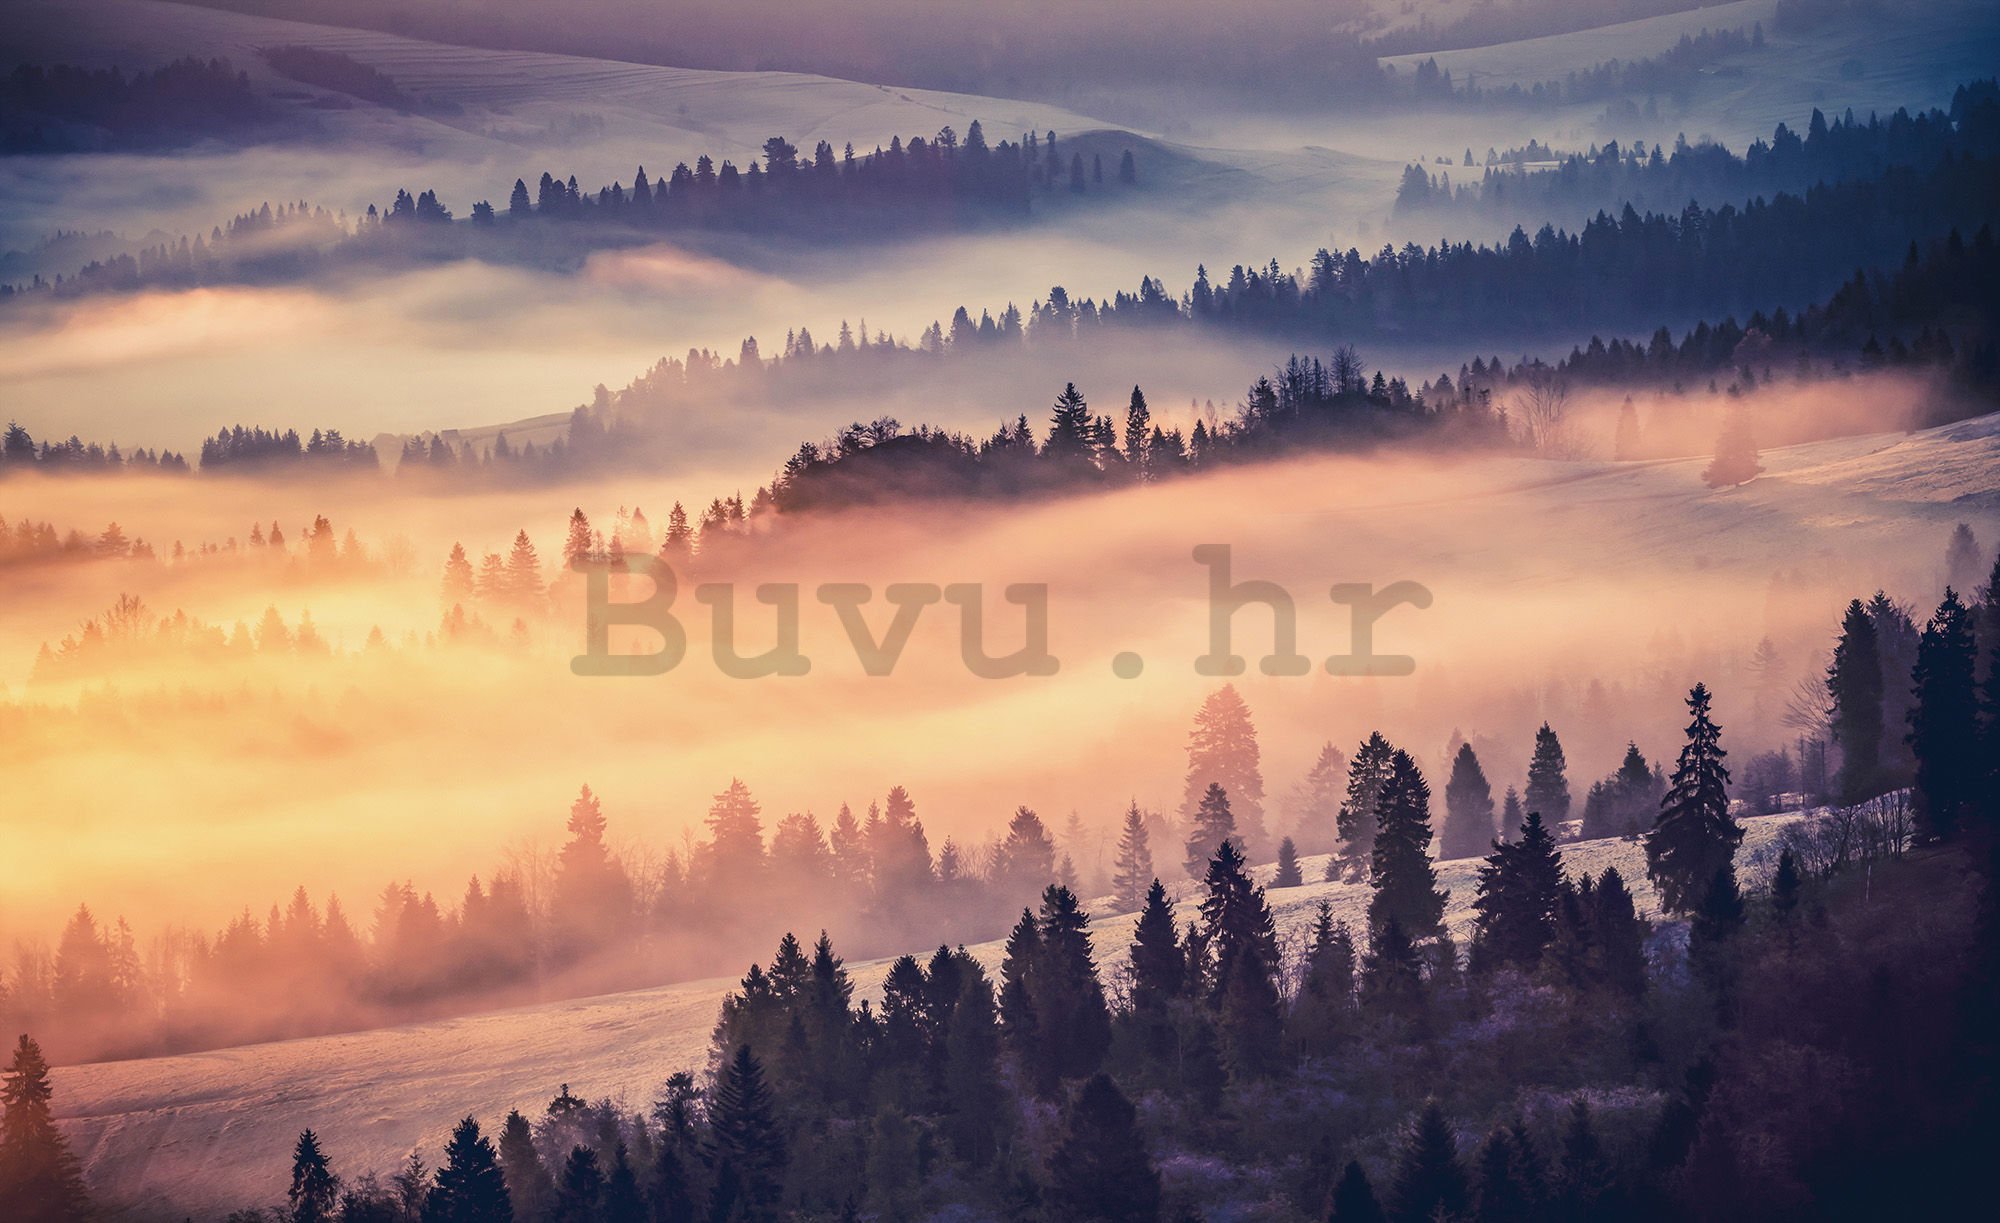 Vlies foto tapeta: Magla nad planinama - 254x368 cm